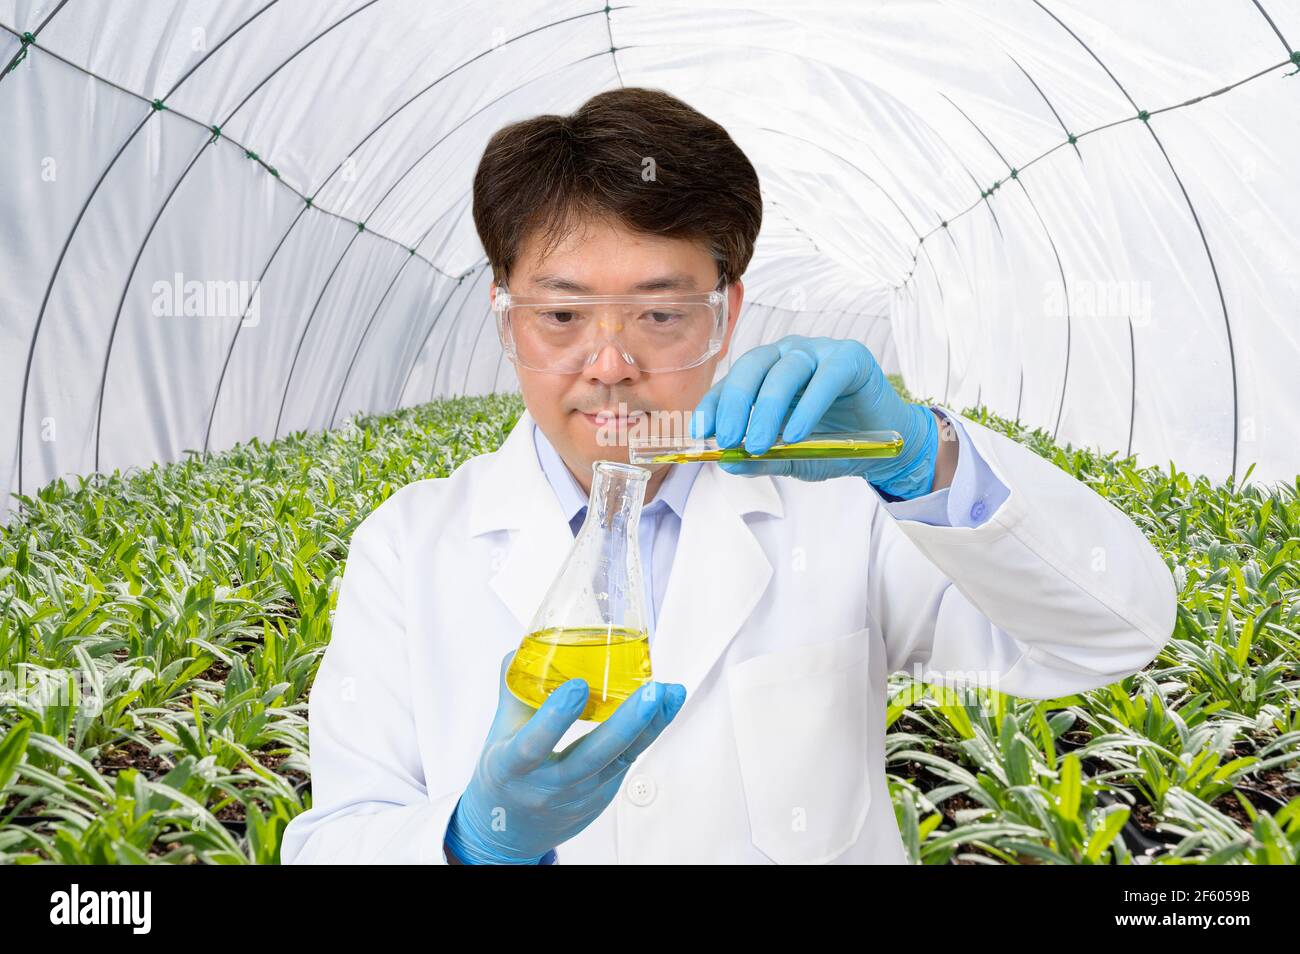 Un scientifique asiatique d'âge moyen tenant un conteneur expérimental dans sa main dans une maison verte où les plantes poussent. Banque D'Images